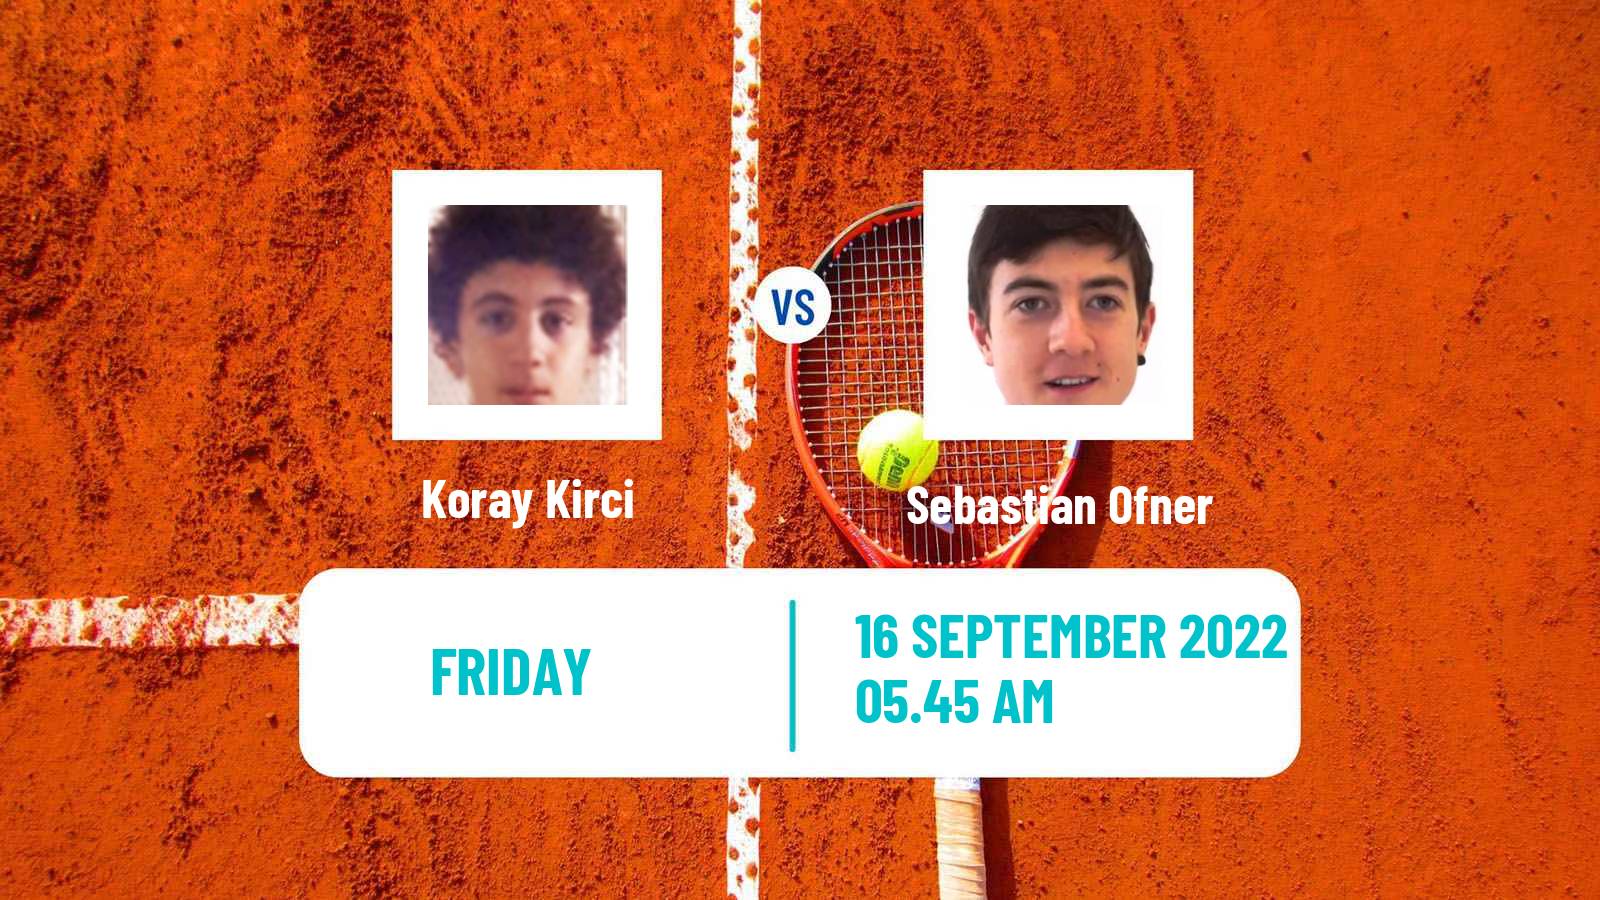 Tennis ATP Challenger Koray Kirci - Sebastian Ofner